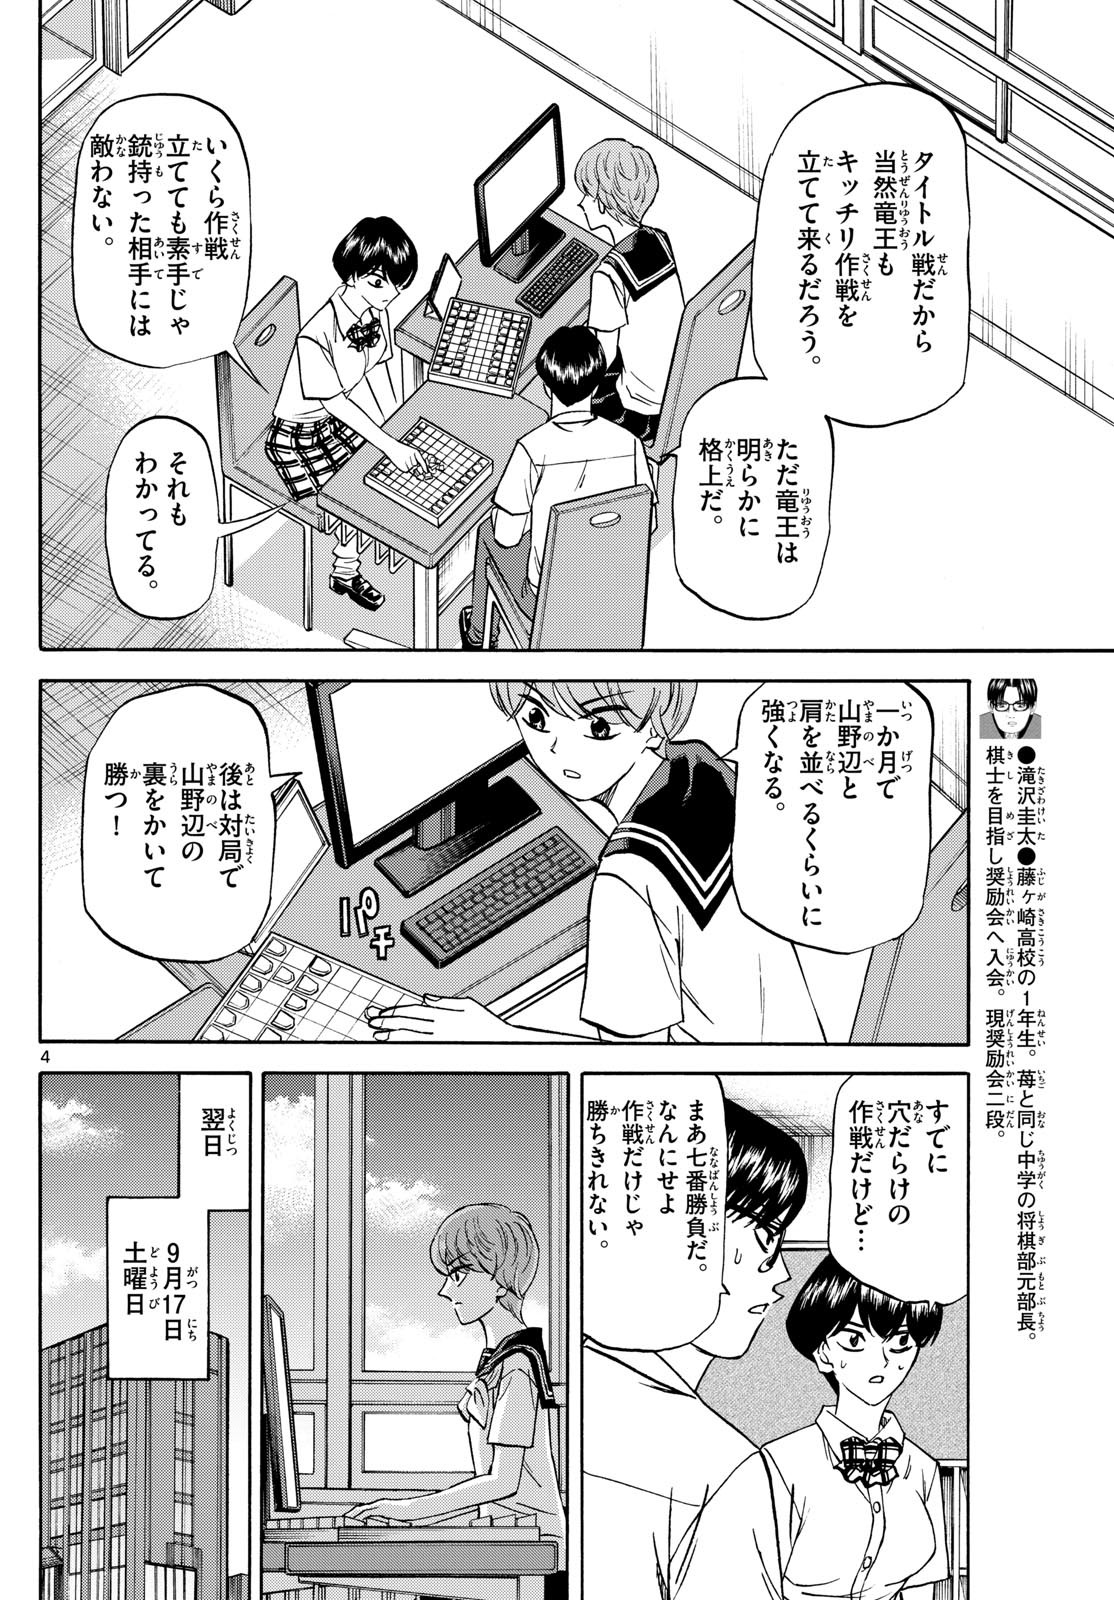 Ryu-to-Ichigo - Chapter 148 - Page 4